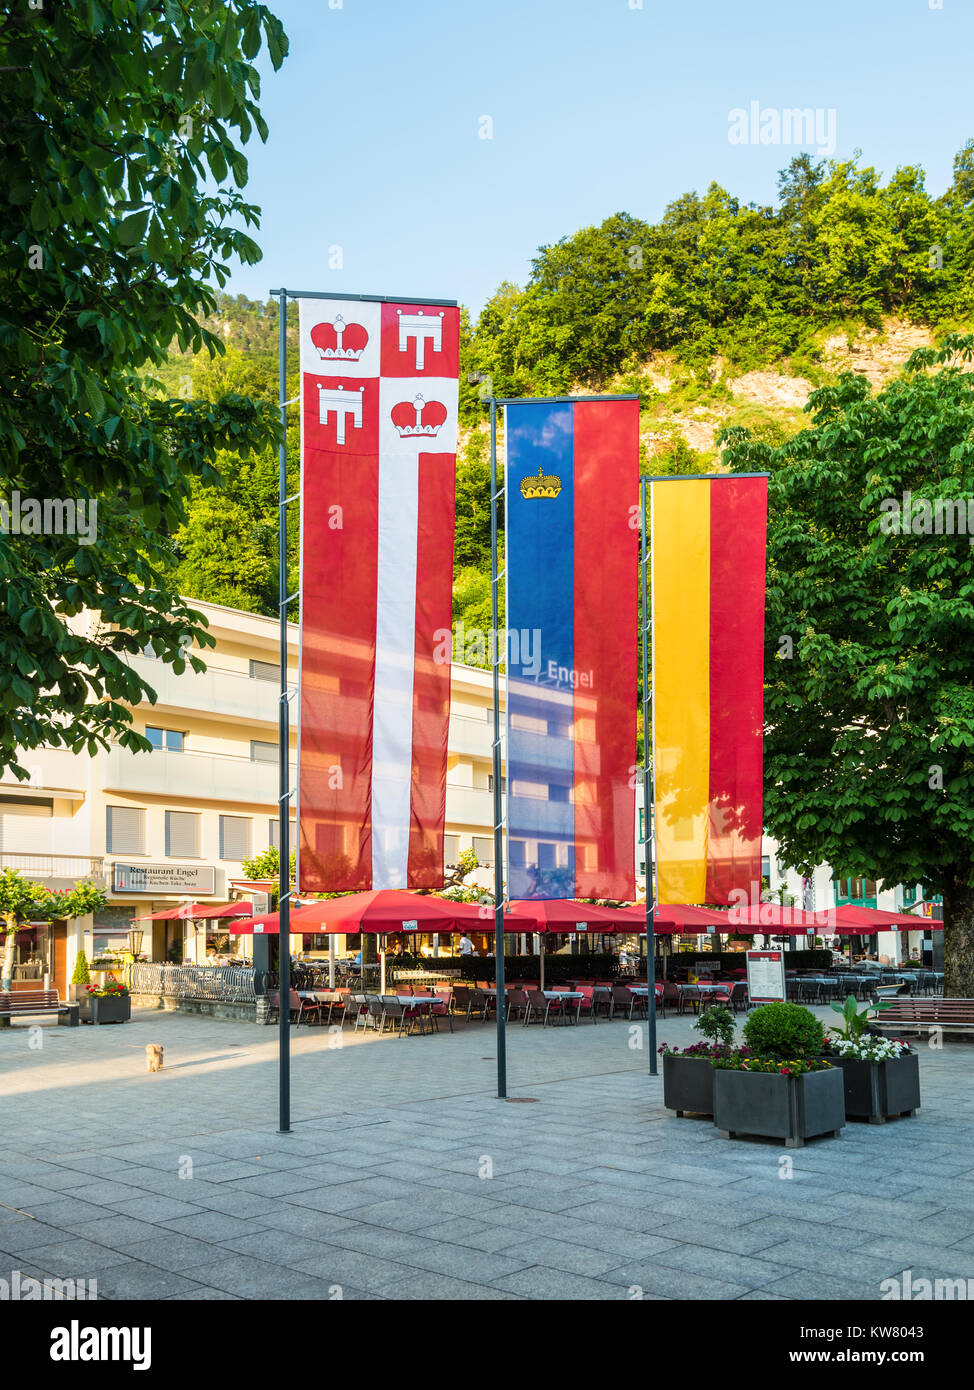 Vaduz, Liechtenstein - 28 Maggio 2016: Street view con bandiere colorate del Principato del Liechtenstein a Vaduz città. Foto Stock